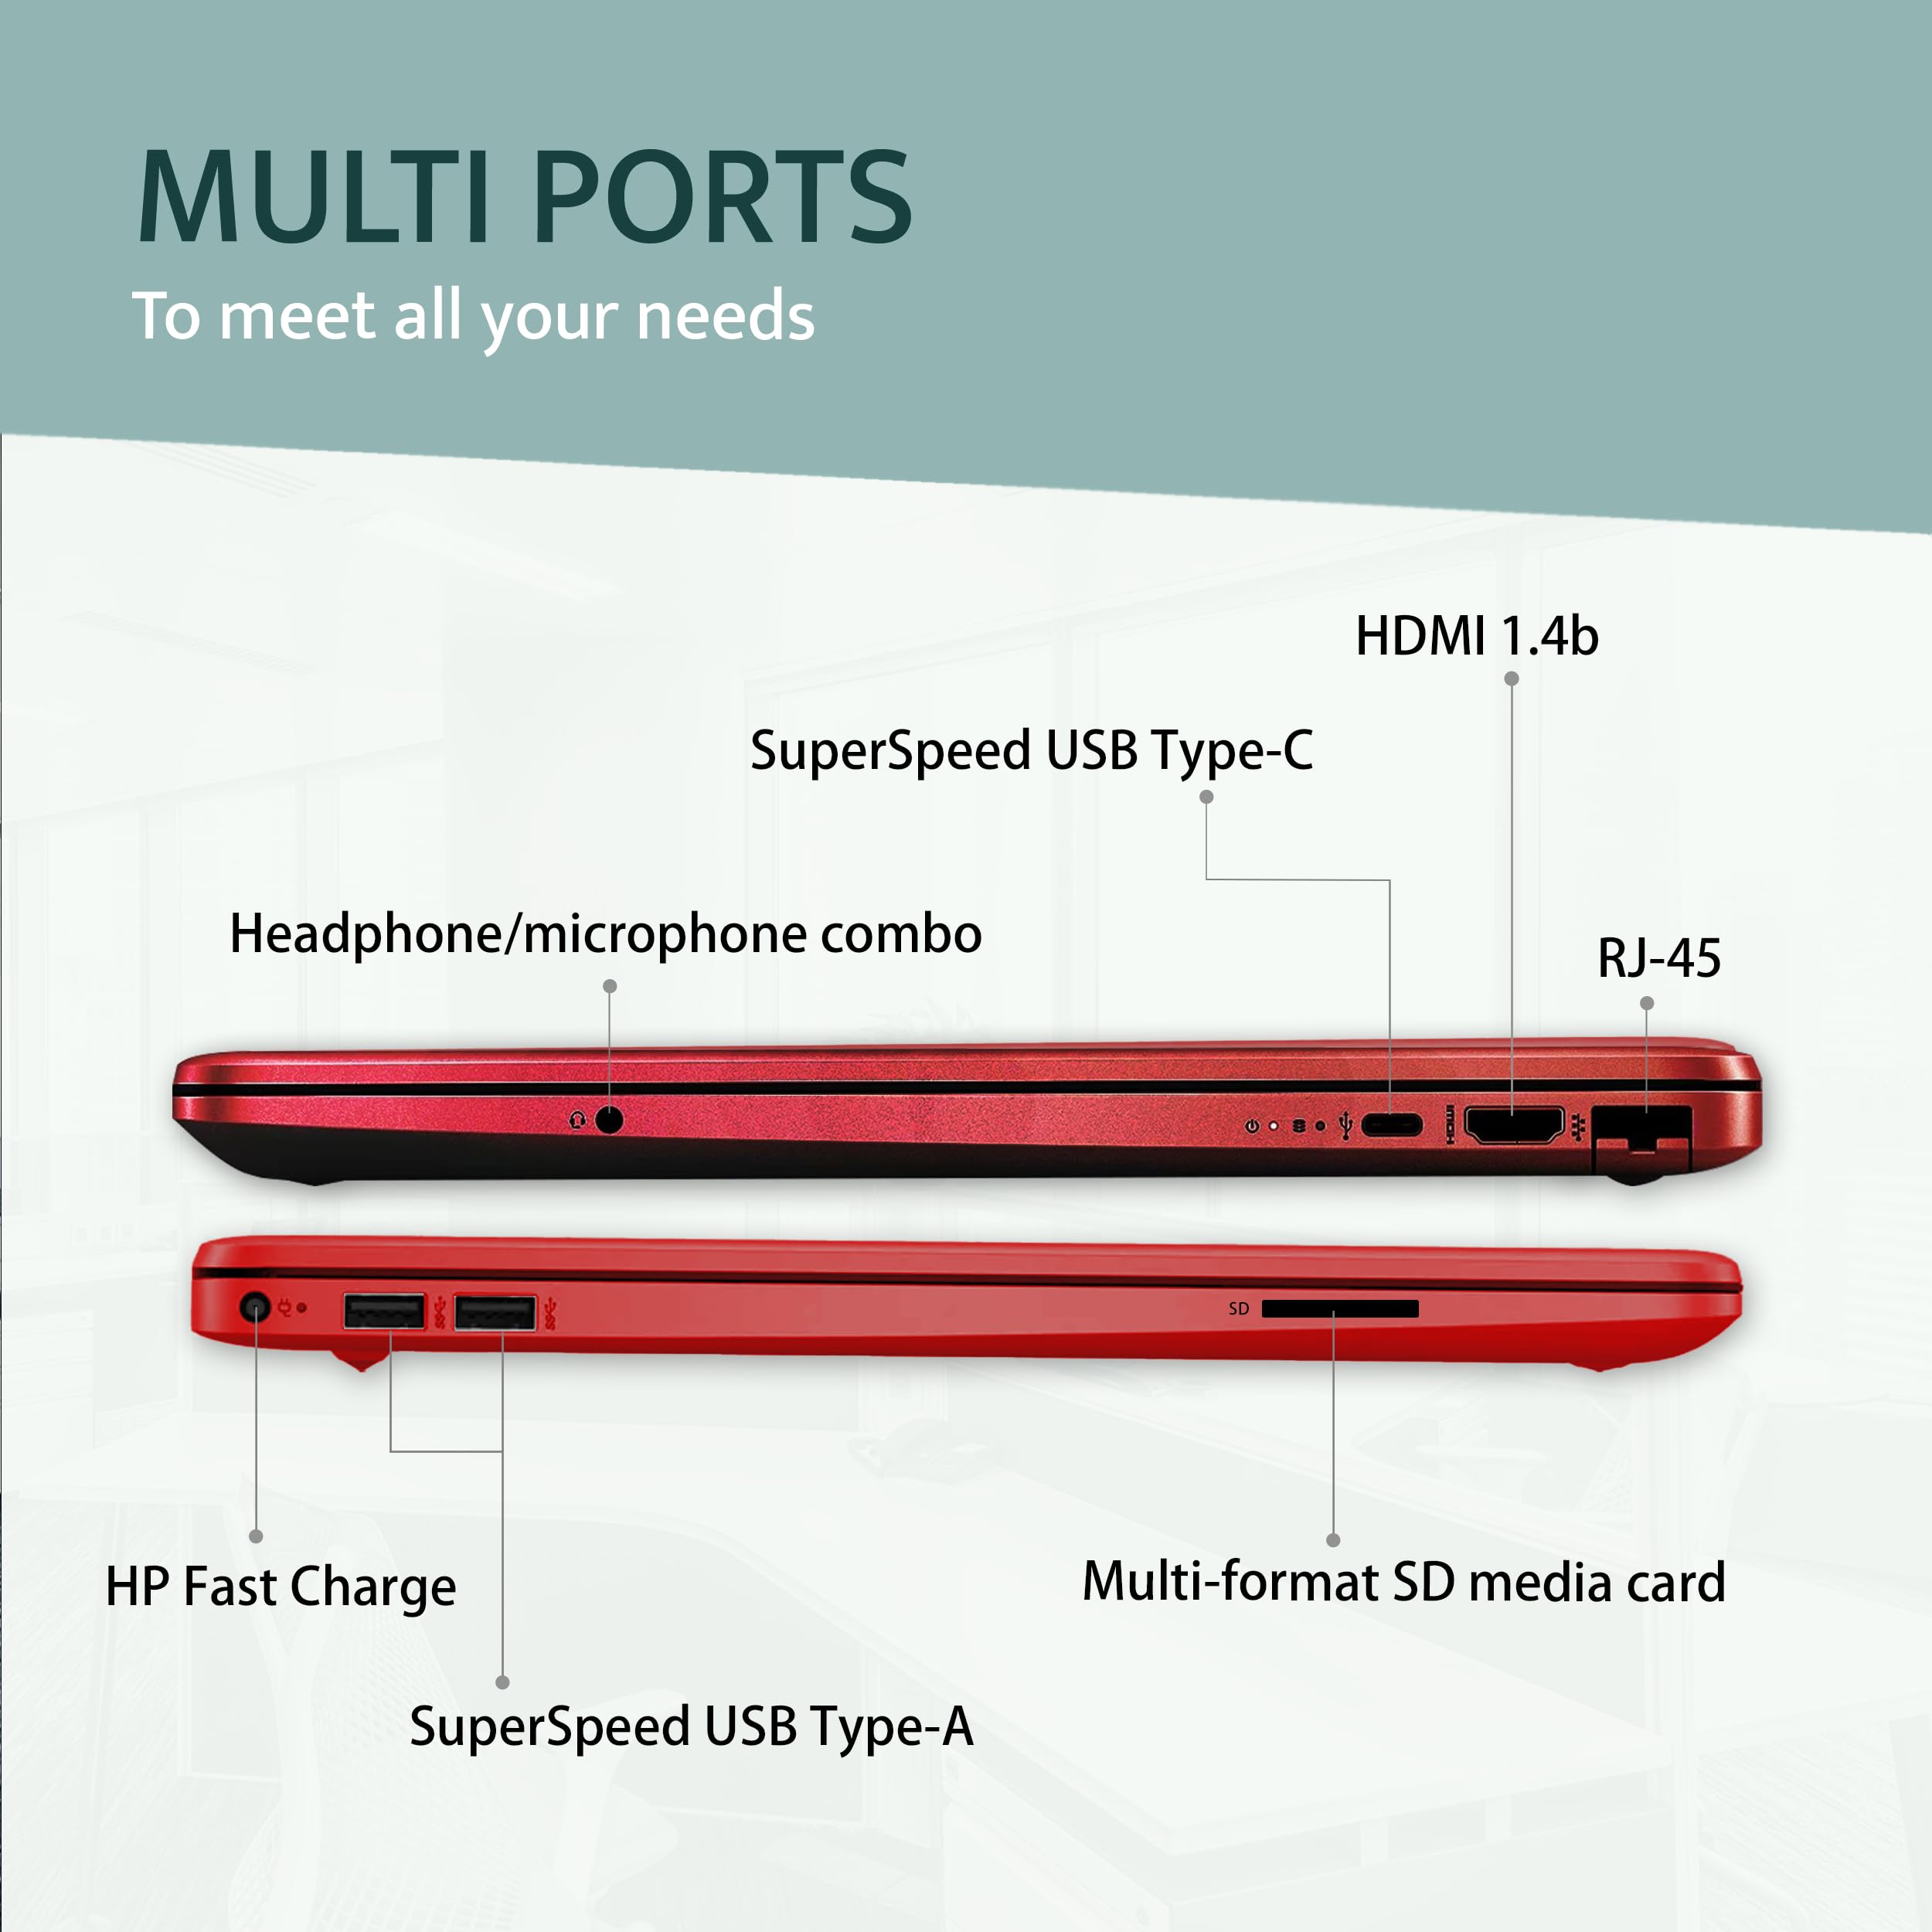 HP 15.6” HD Student Laptop, Intel Pentium Silver N5030, 32GB RAM, 2TB PCIe SSD, Intel UHD Graphics, HD Webcam, Numpad, Wi-Fi 5, Bluetooth, Win 10 S, Red, 32GB Snowbell USB Card